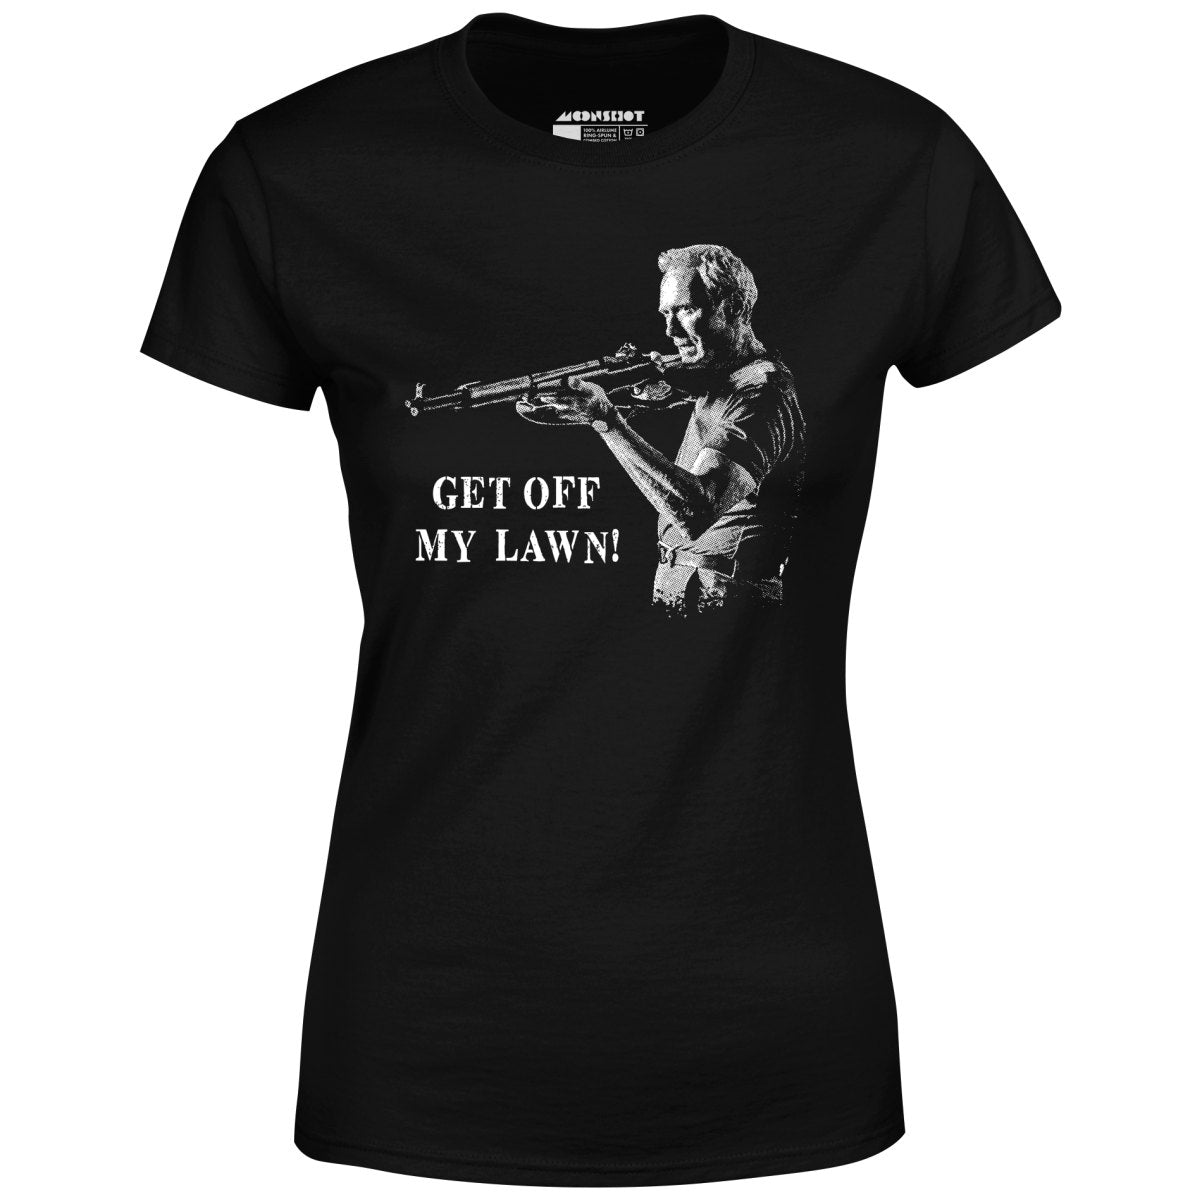 Get Off My Lawn - Women's T-Shirt